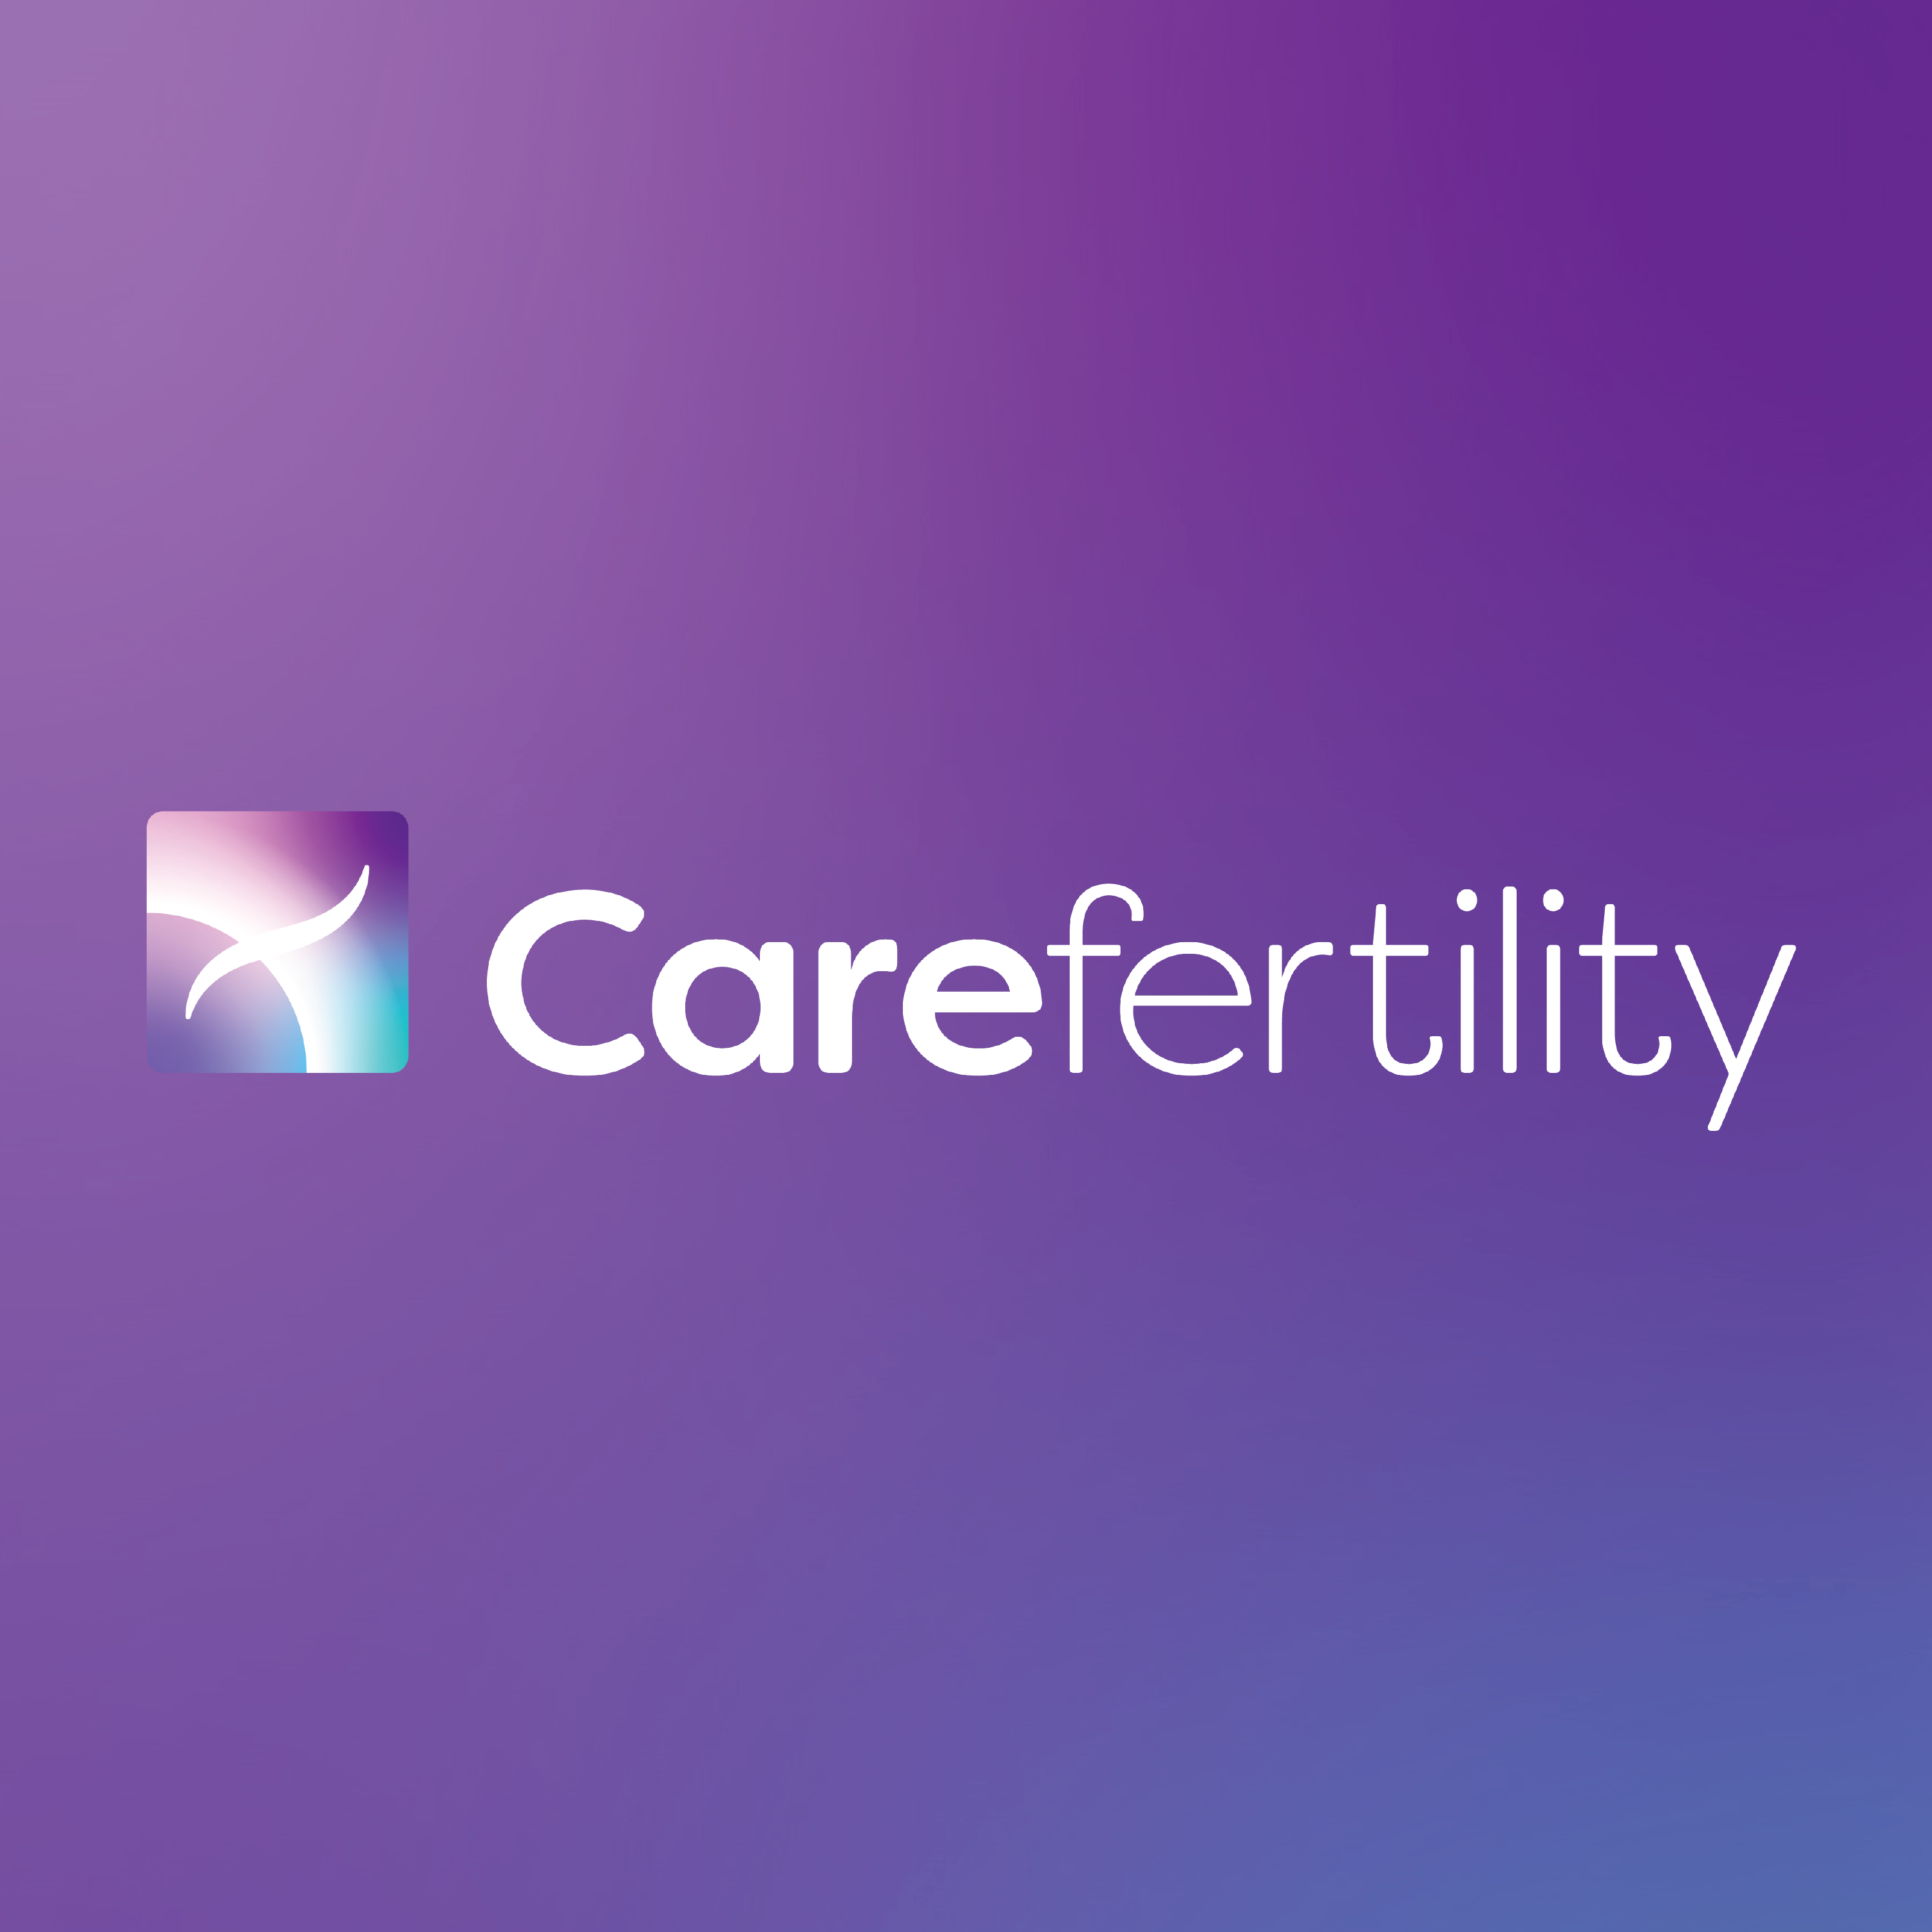 Care Fertility Lancaster 01524 580958